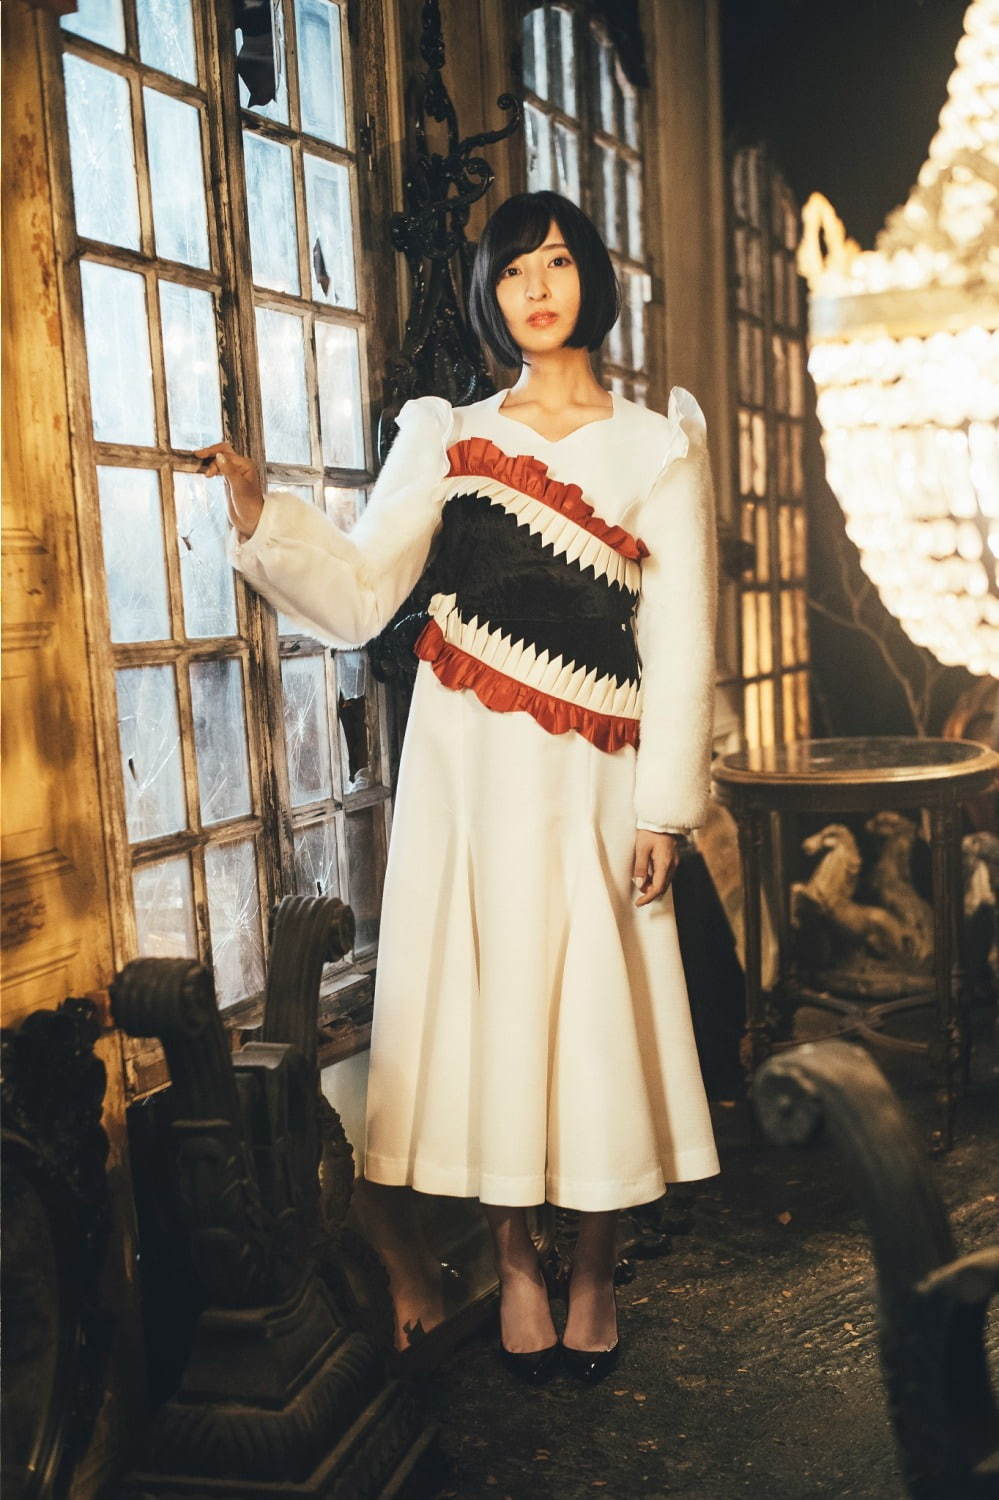 ハザマ 声優の佐倉綾音 内山昂輝 想い出の聖服 スカートや 16番目のセットアップ など新作コラボ ファッションプレス